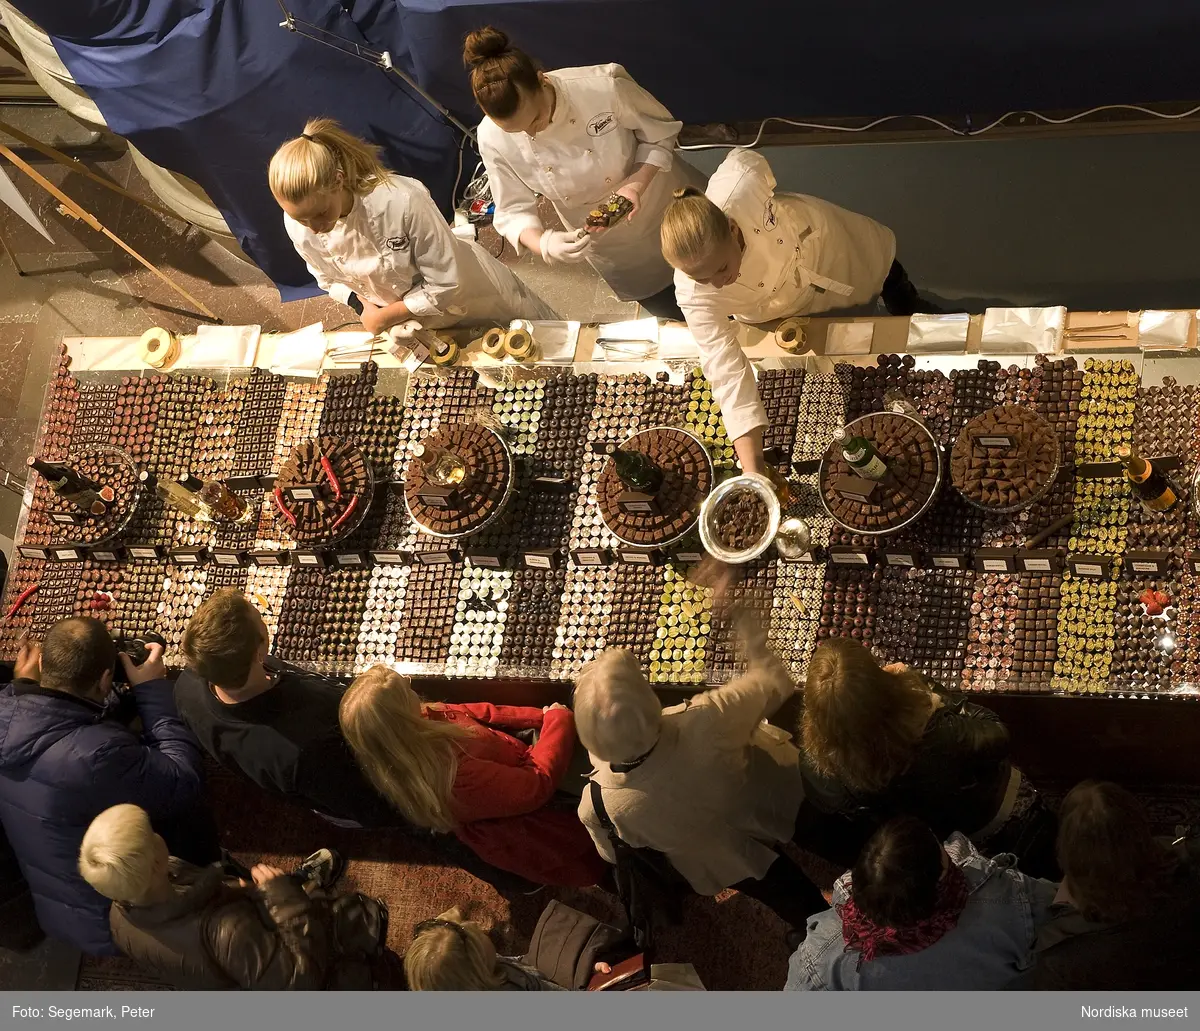 Dokumentation av Chokladfestivalen 15-17 oktober i Nordiska museets stora hall.

För nionde året i rad intog chokladtillverkare, leverantörer, chocolatierer och konditorier museets stora hall och visade upp och sålde det senaste inom kvalitetschoklad. Praliner, chokladkakor och bakverk presenterades av utställarna. Årets konditor - Roy Fares - utsågs under chokladfestivalen. Dessutom hölls en chokladskulpturtävling för sockerbagare där temat var ägget och besökarna fick rösta på sitt favoritbidrag. Här vann Team Dragons chokladskulptur  överlägset. ( se bild: NMA.0056762_29) Teamet, bestod av Alicia Dahl, Therese Vesterholm, Linn Danielsson, Kim Westerling & Anna-Kitty Jonsson. Alla kommer från Yrkeshögskolan för bagare och konditorer i Kristiandstad. Tre team från skolan deltog i skulpturtävlingen. 
